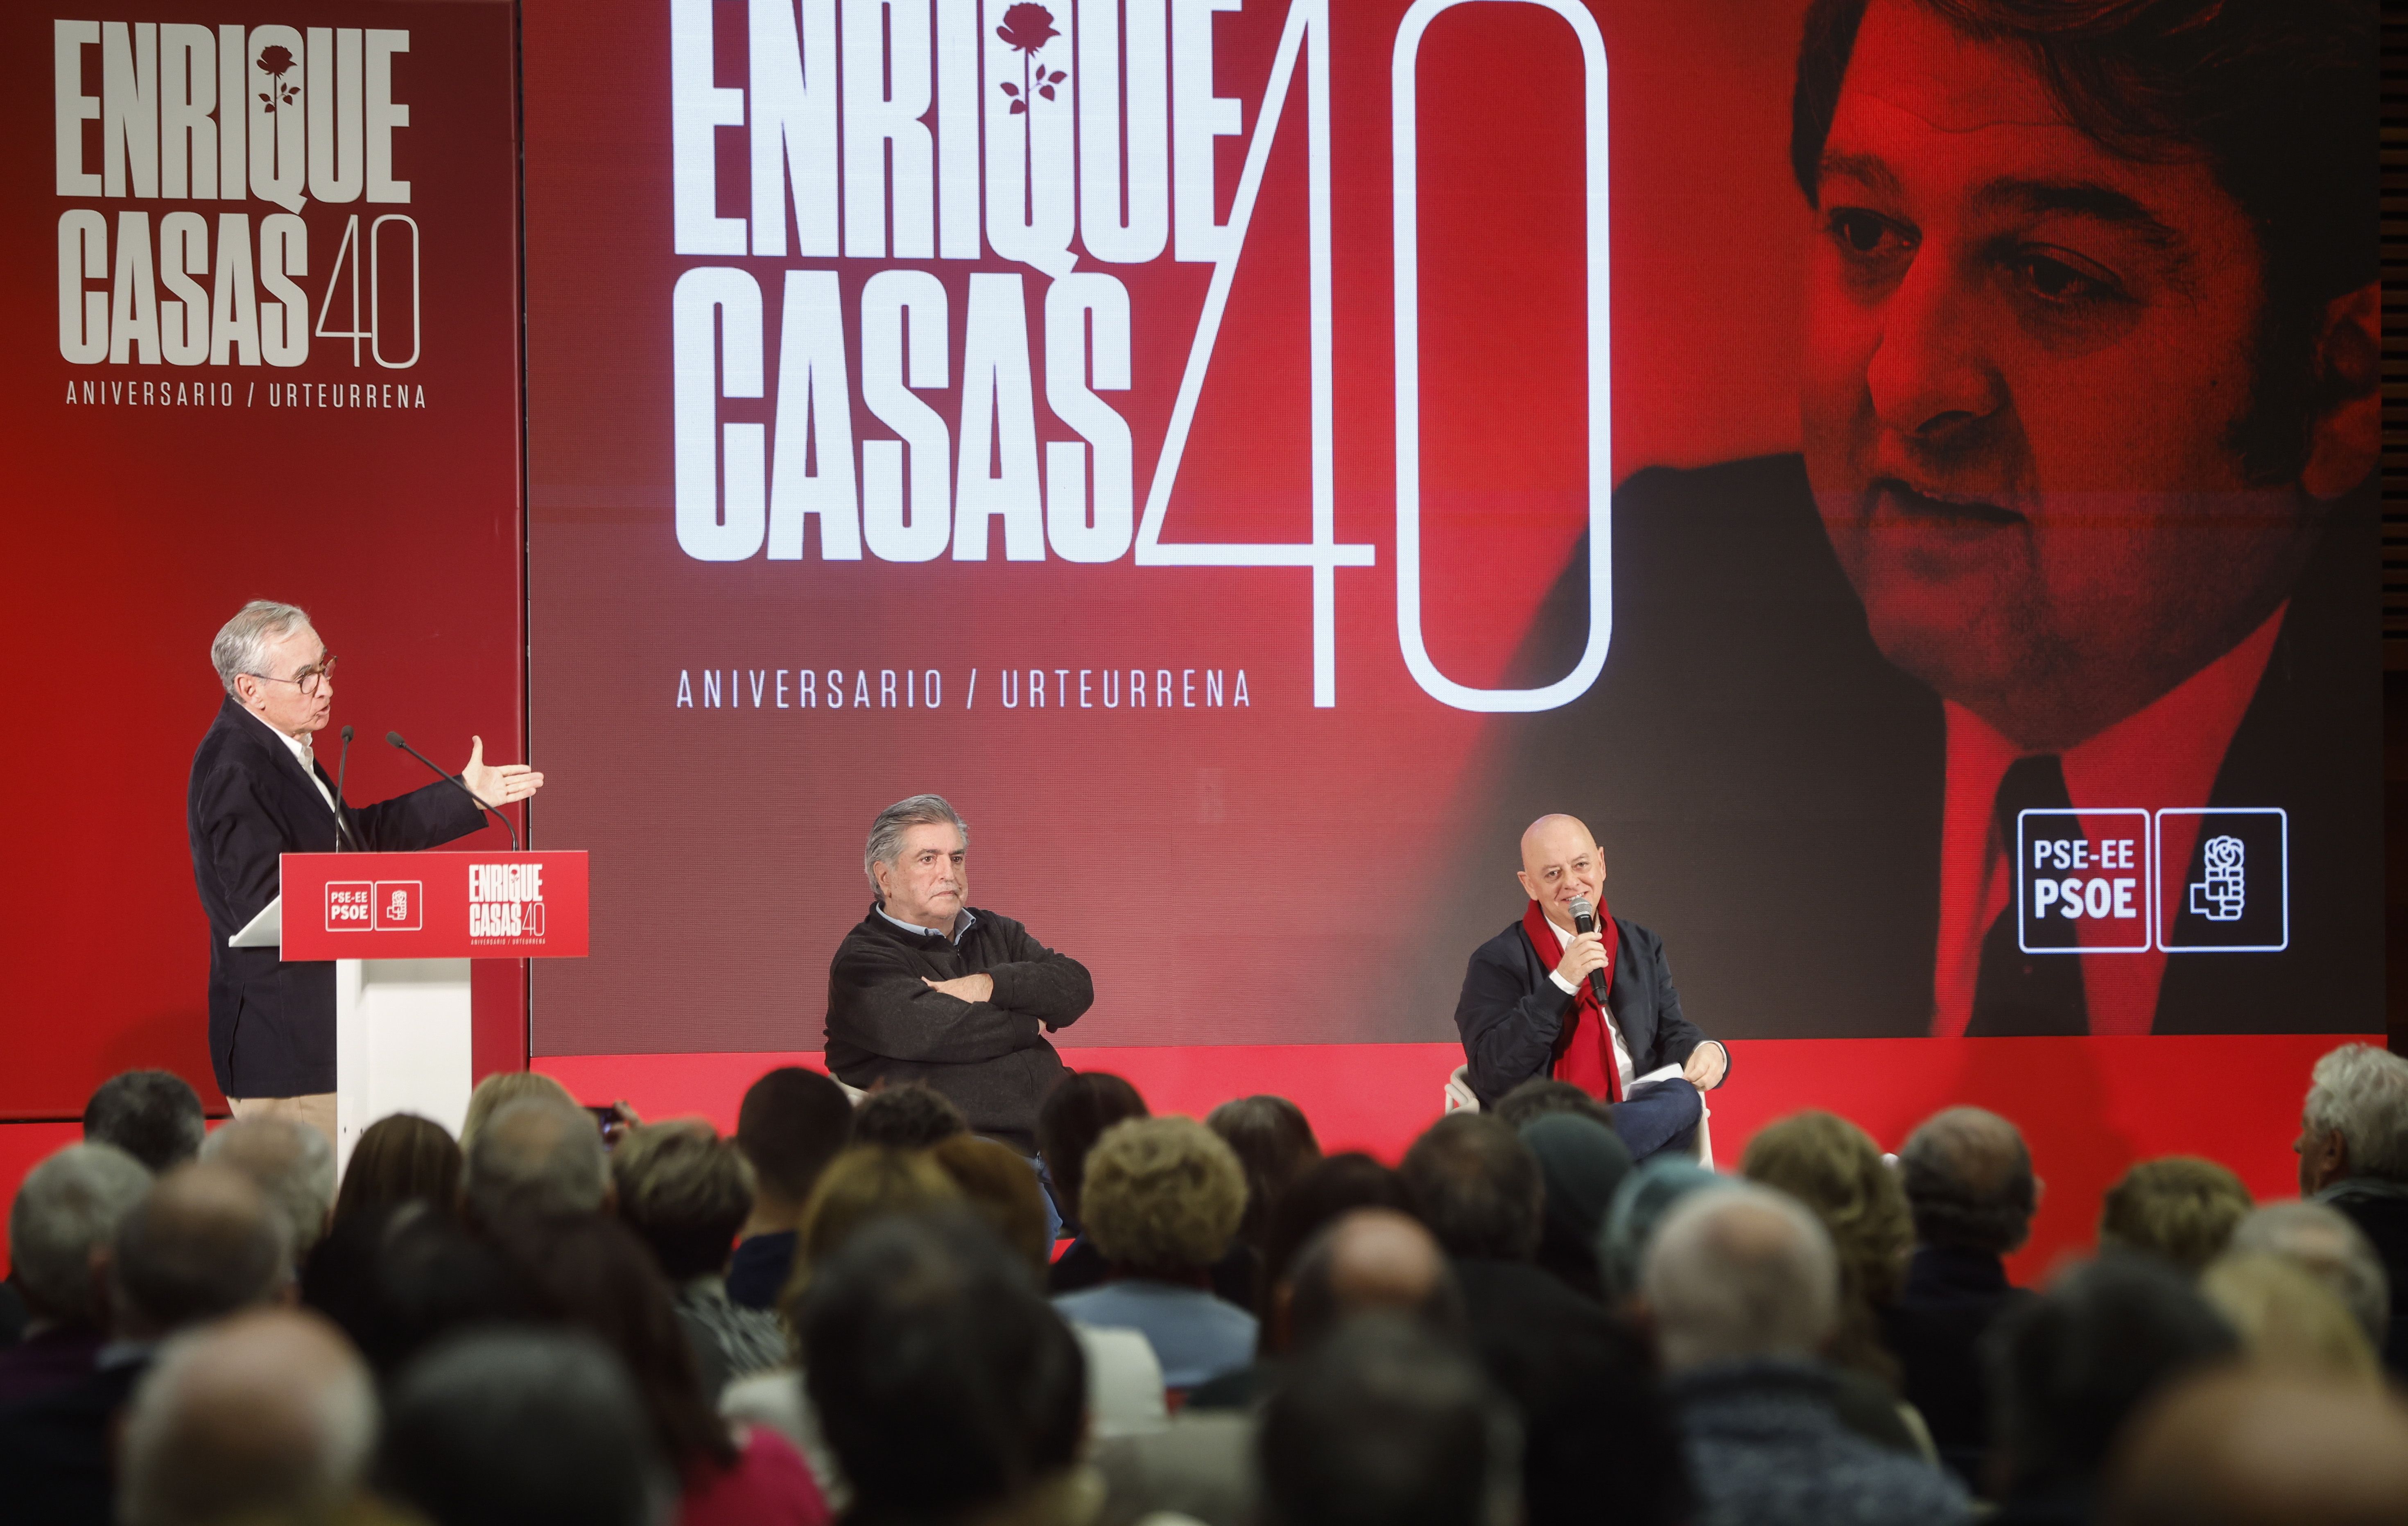 Enrique Casas oroitzeko ekitaldia, gaur, Donostian. JUAN HERRERO / EFE